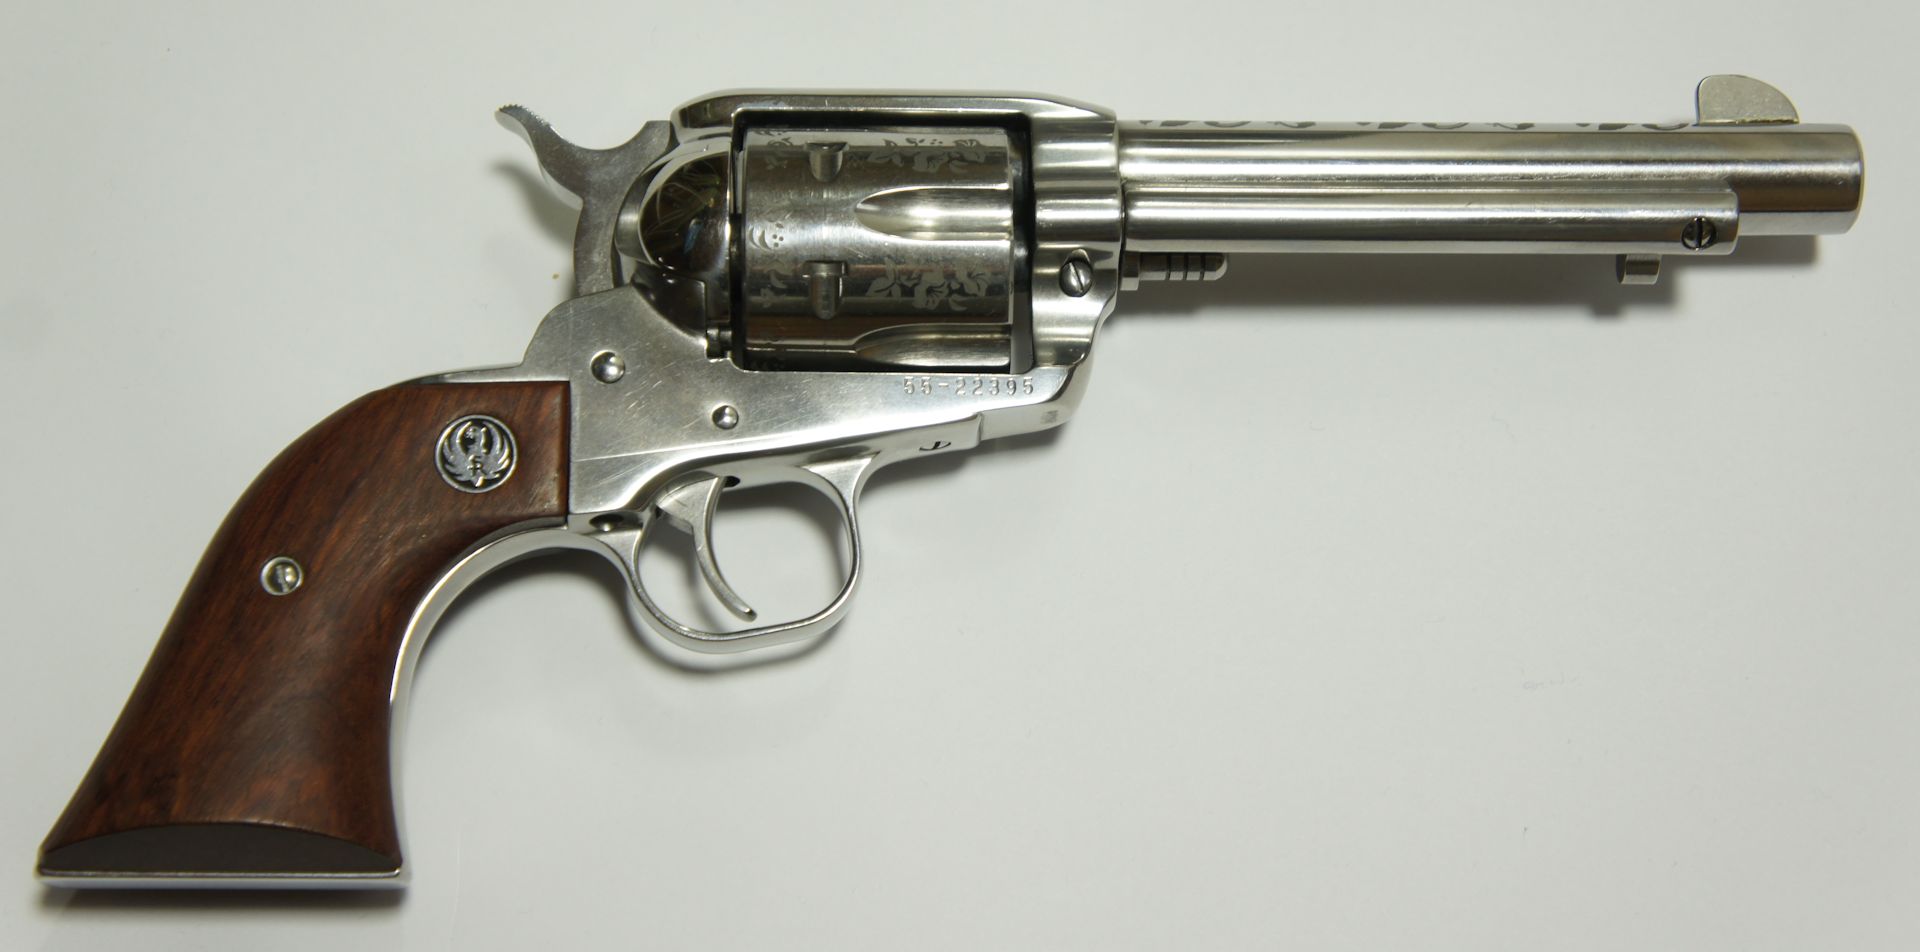 Zum Vergleich: Dieser erwerbsscheinpflichtige Ruger Vaquero basiert auf der Originalwaffe Colt Single Actiom Army